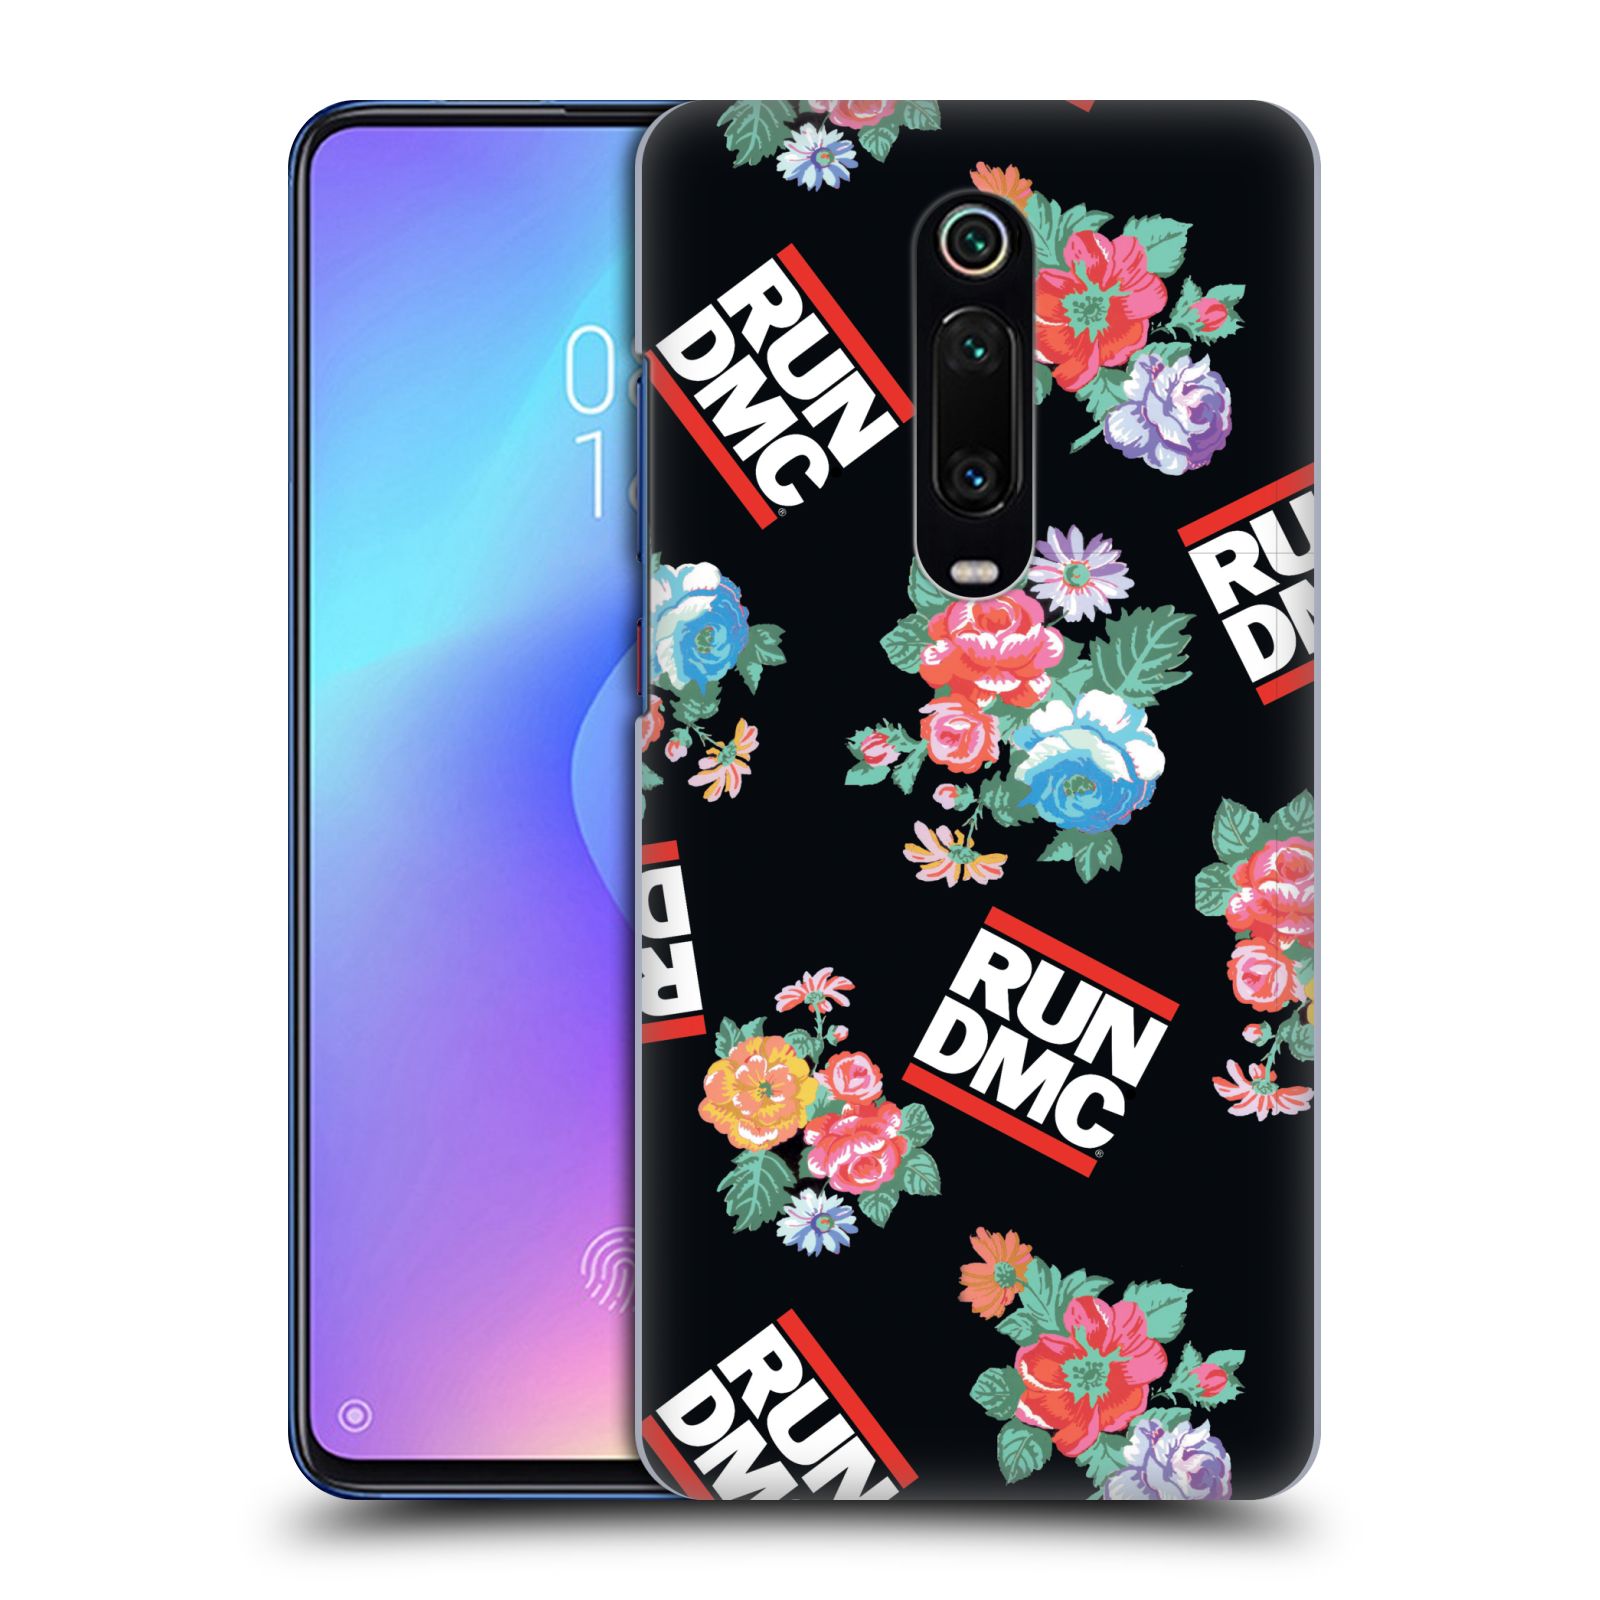 Pouzdro na mobil Xiaomi Mi 9T PRO - HEAD CASE - rapová kapela Run DMC květiny černé pozadí